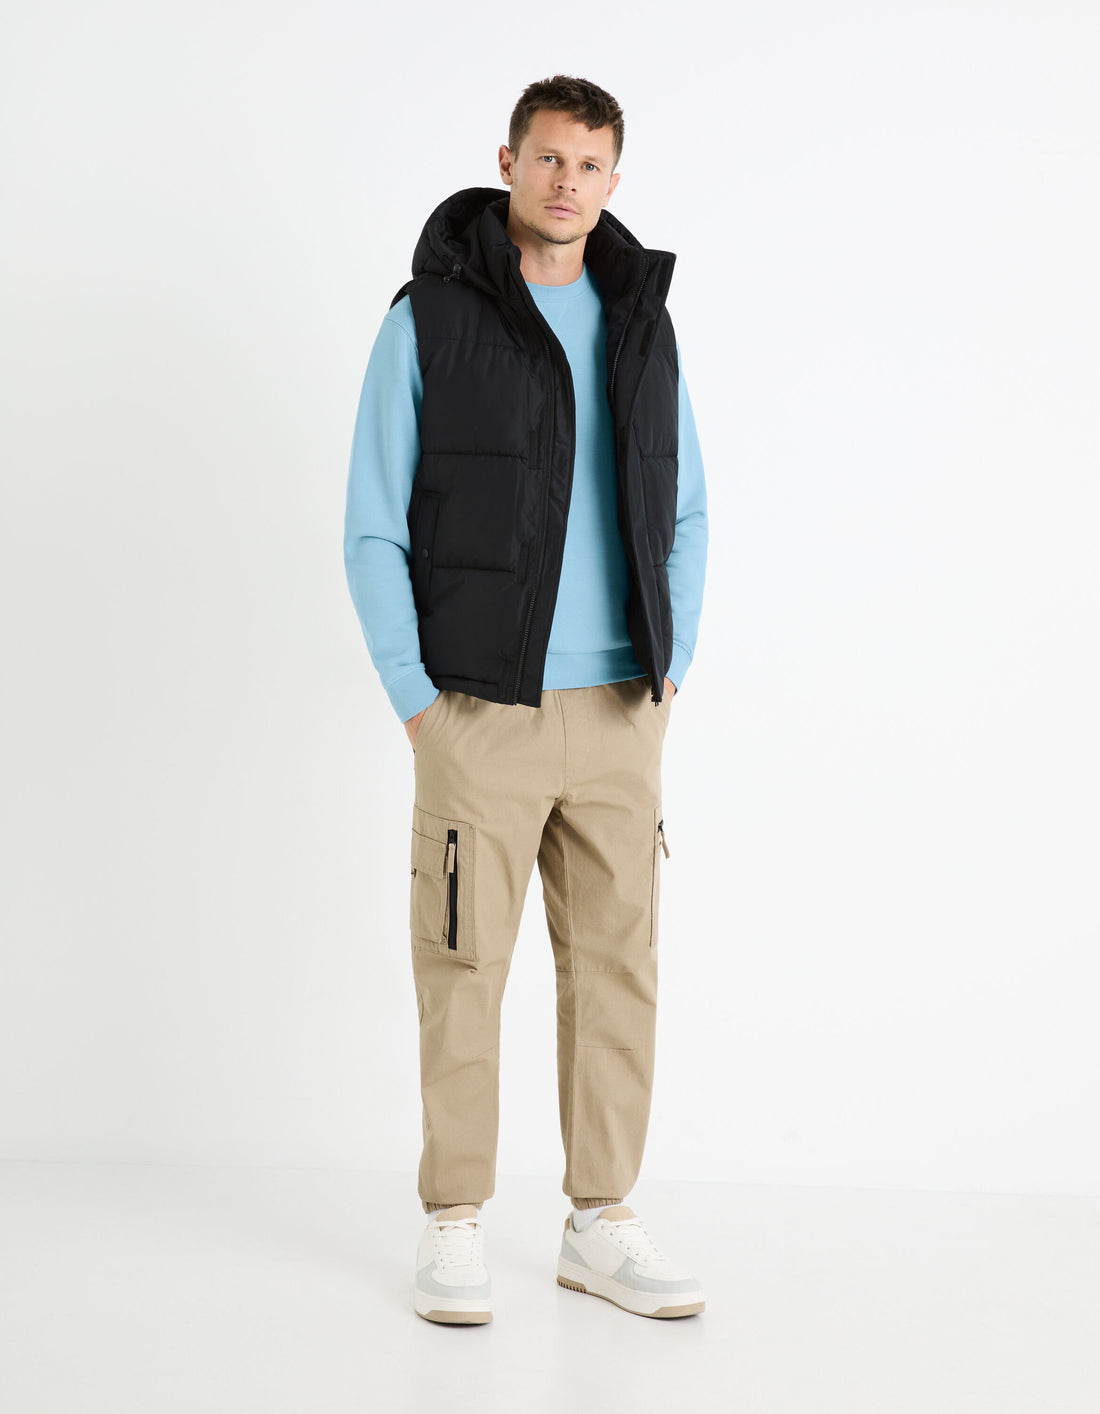 Round Neck Sweatshirt 100% Cotton_FESEVEN_BLUE 01_02